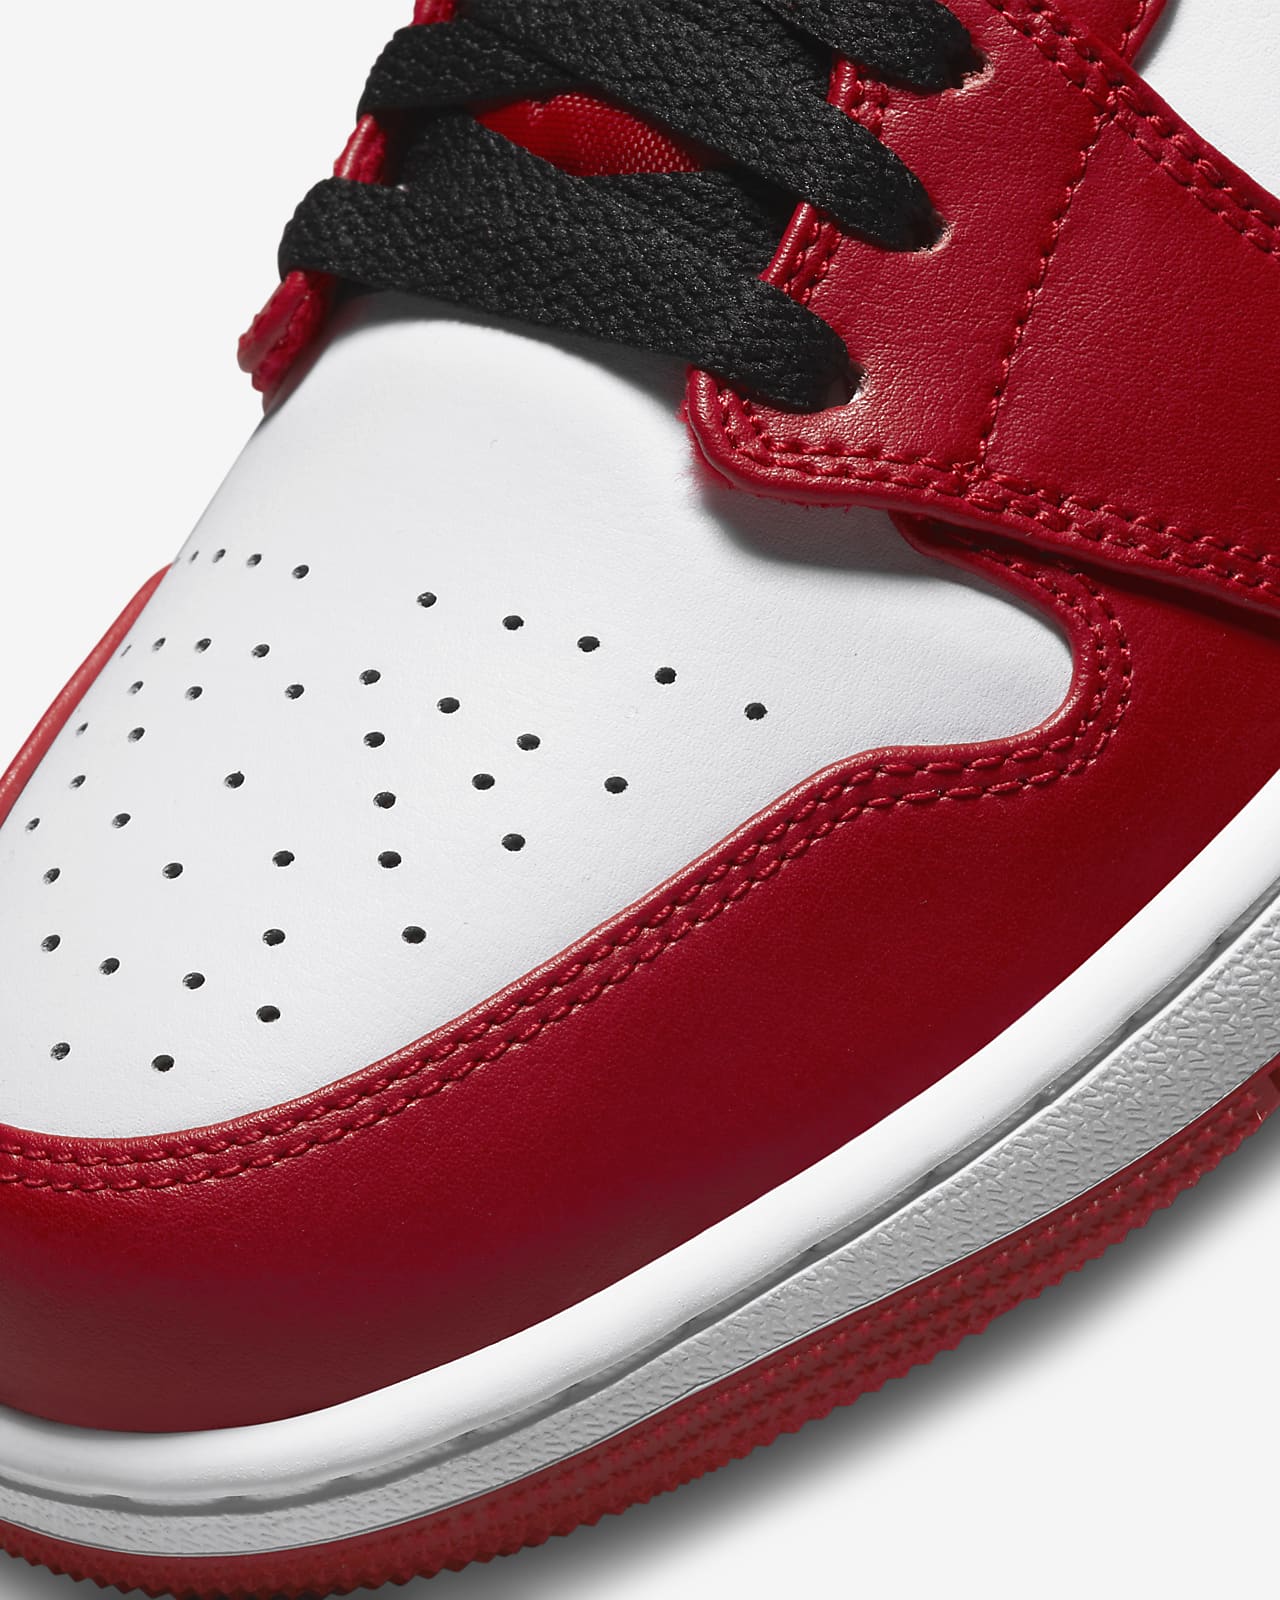 Air Jordan 1 red white blue jordan 1 Low Men's Shoes. Nike.com